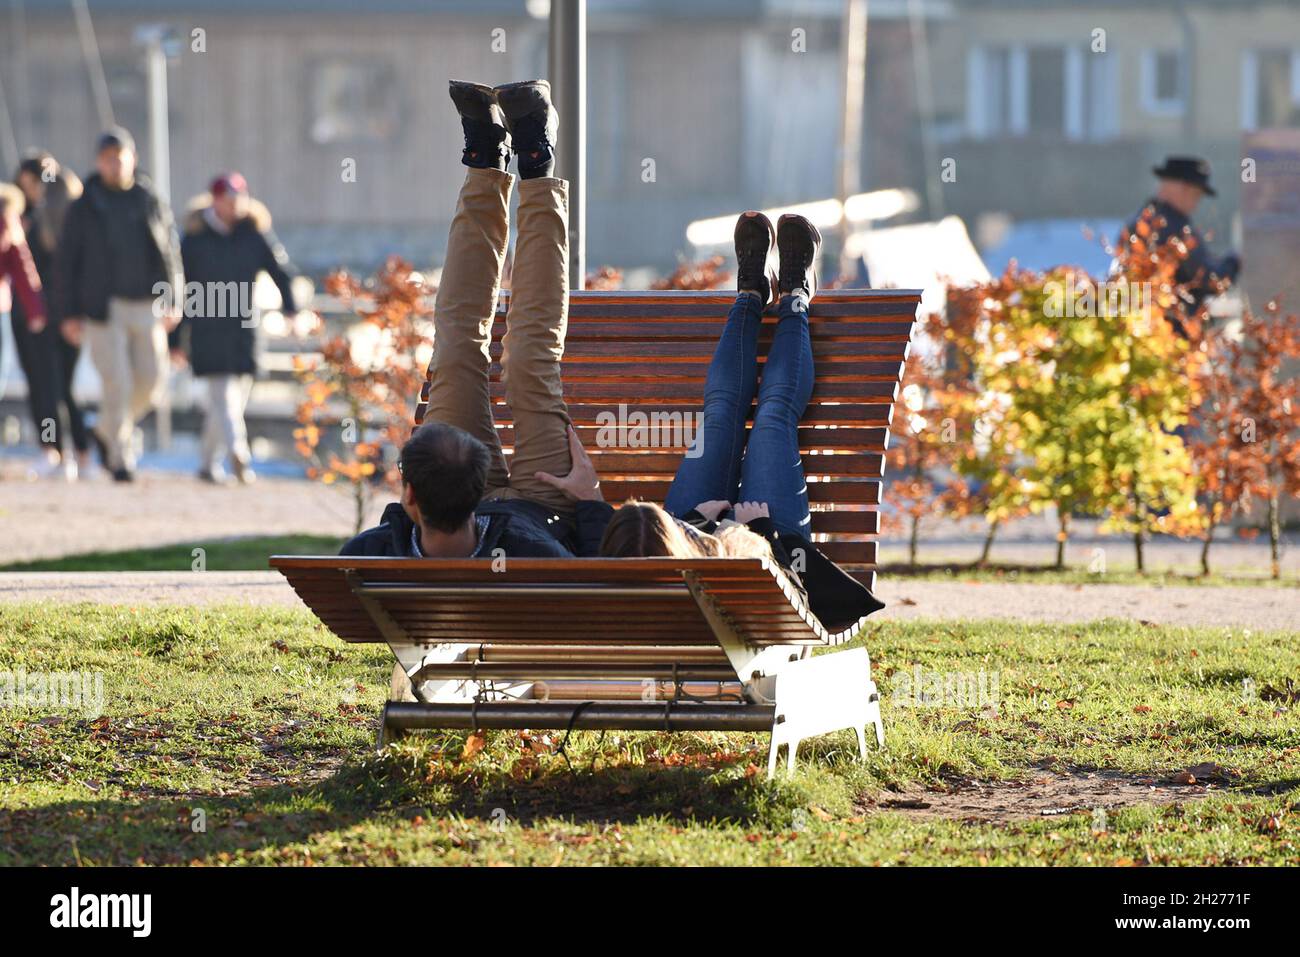 Herbstimmung am Attersee, ein Paar erholt sich auf einer Liegebank - umore d'autunno all'Attersee, un paio è rilassante su un lettino Foto Stock